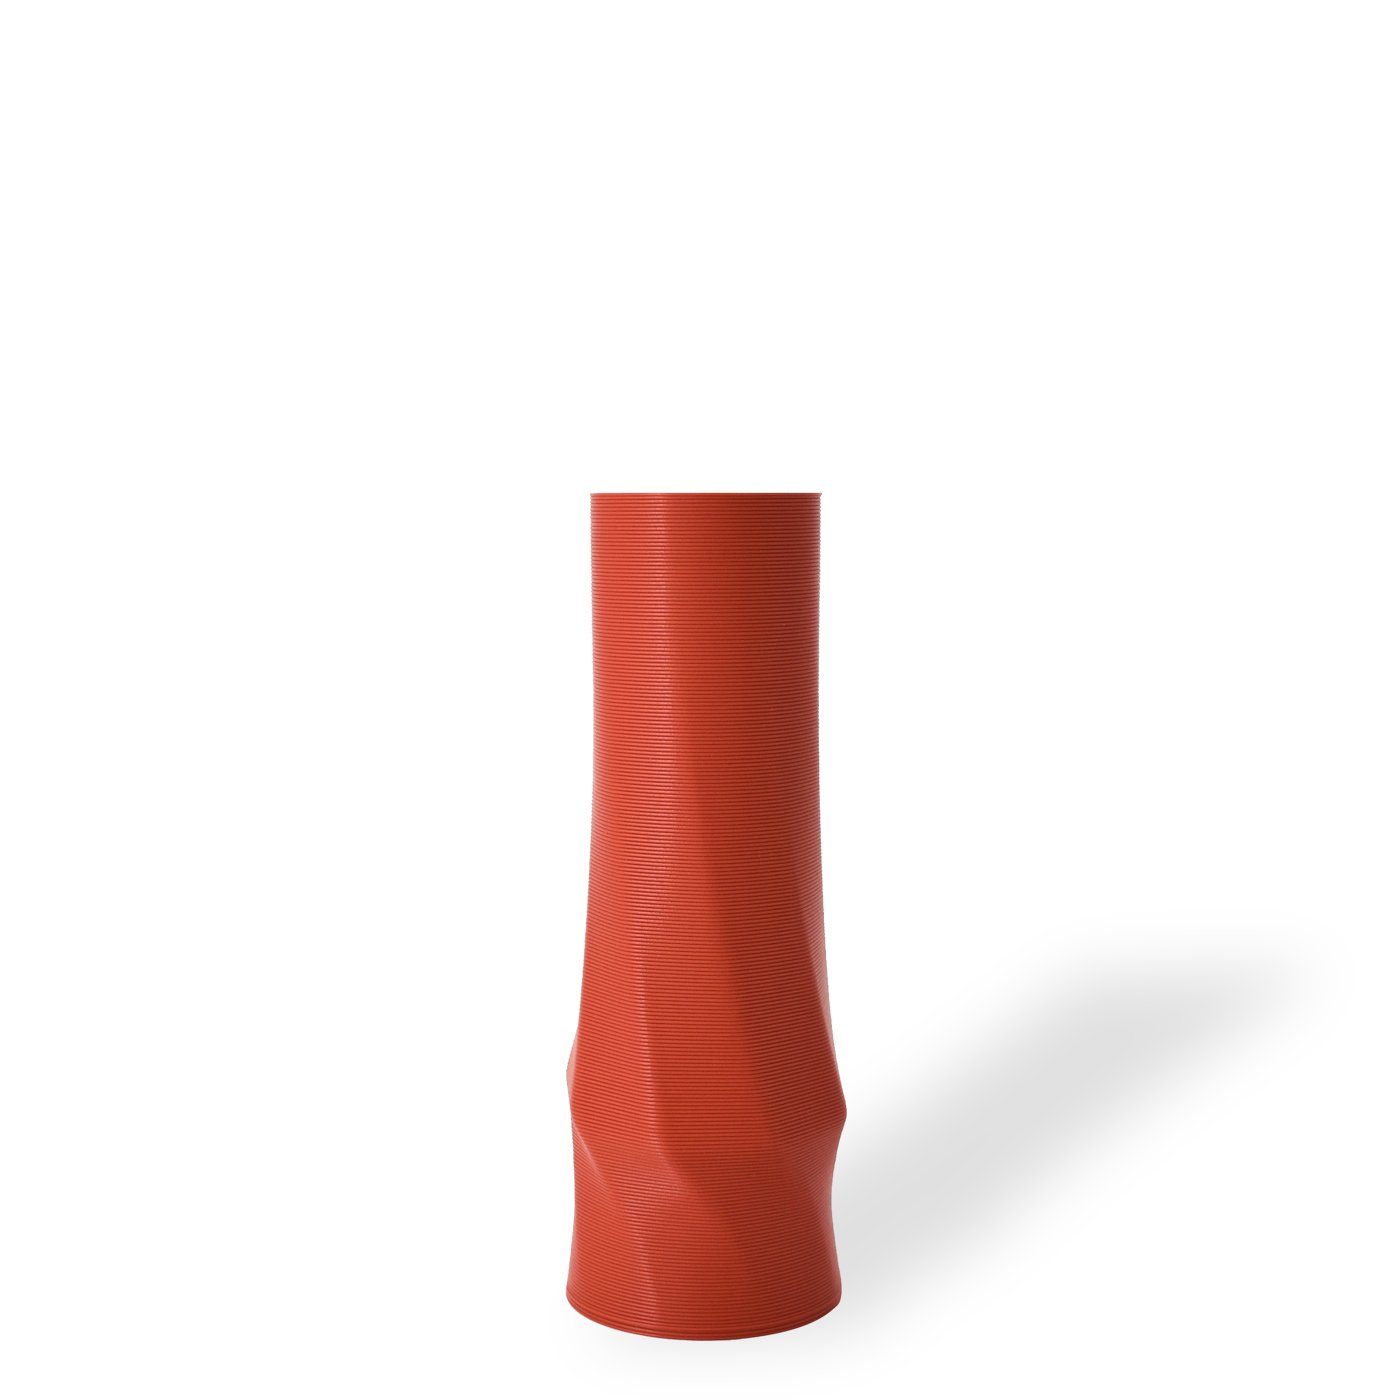 Shapes - the 3D-Druck 100% 1 viele Dekovase Materials Wasserdicht; circle des Terracotta Farben, (basic), Decorations Vasen, - vase (rot) innerhalb (Rillung) Struktur Leichte 3D Vase), (Einzelmodell